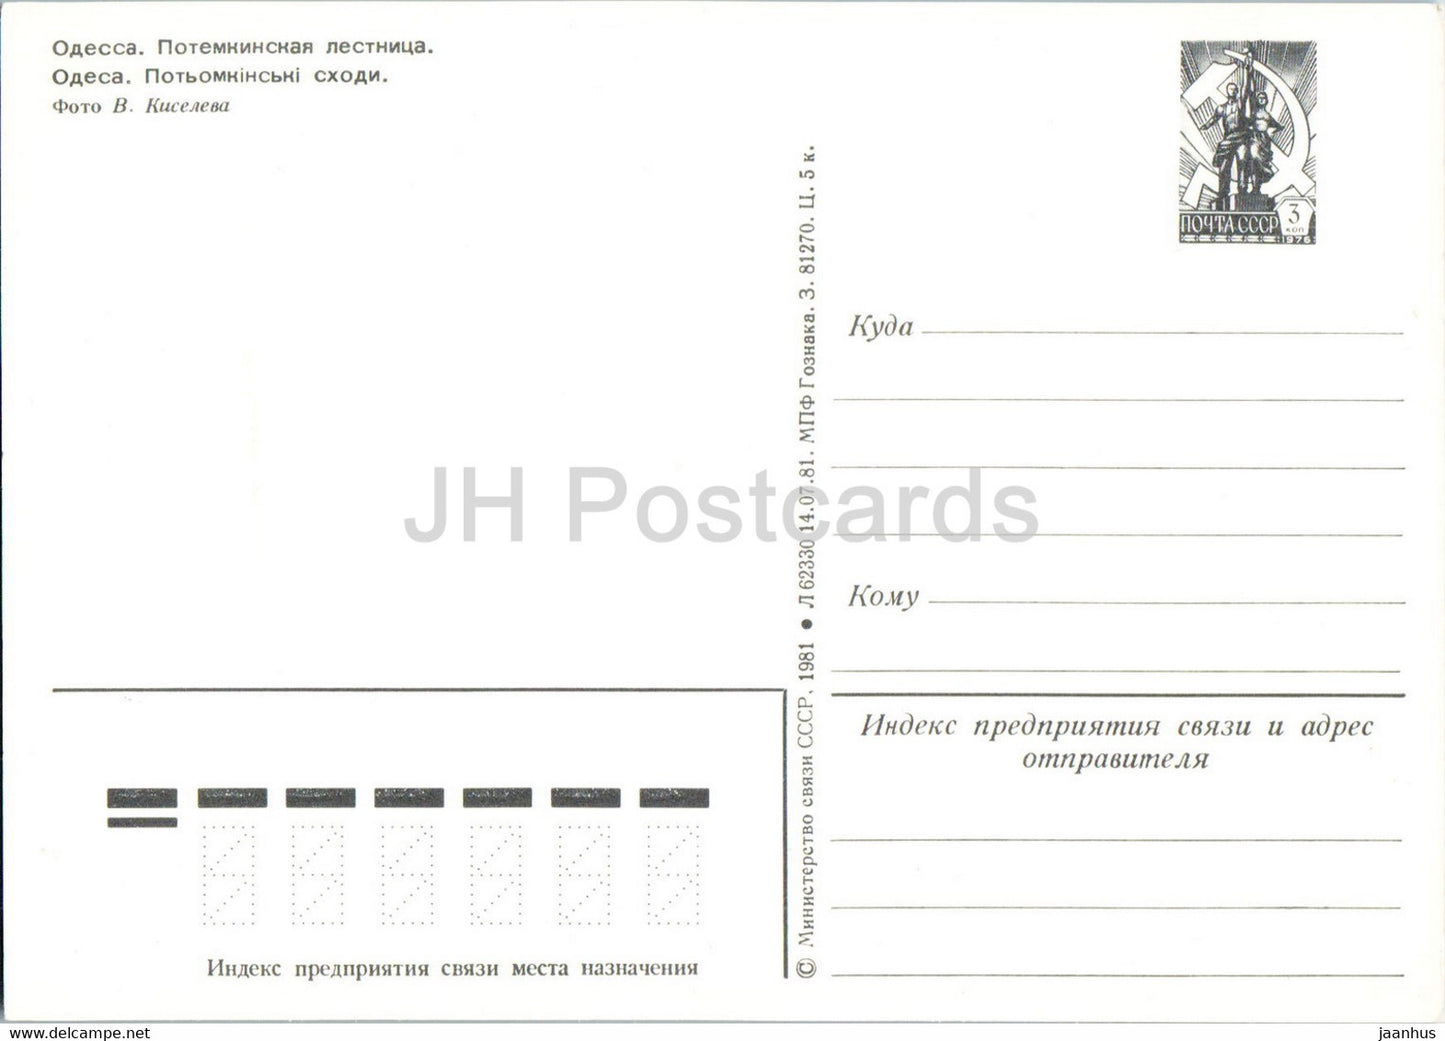 Odessa - Escaliers du Potemkine - entier postal - 1981 - Ukraine URSS - inutilisé